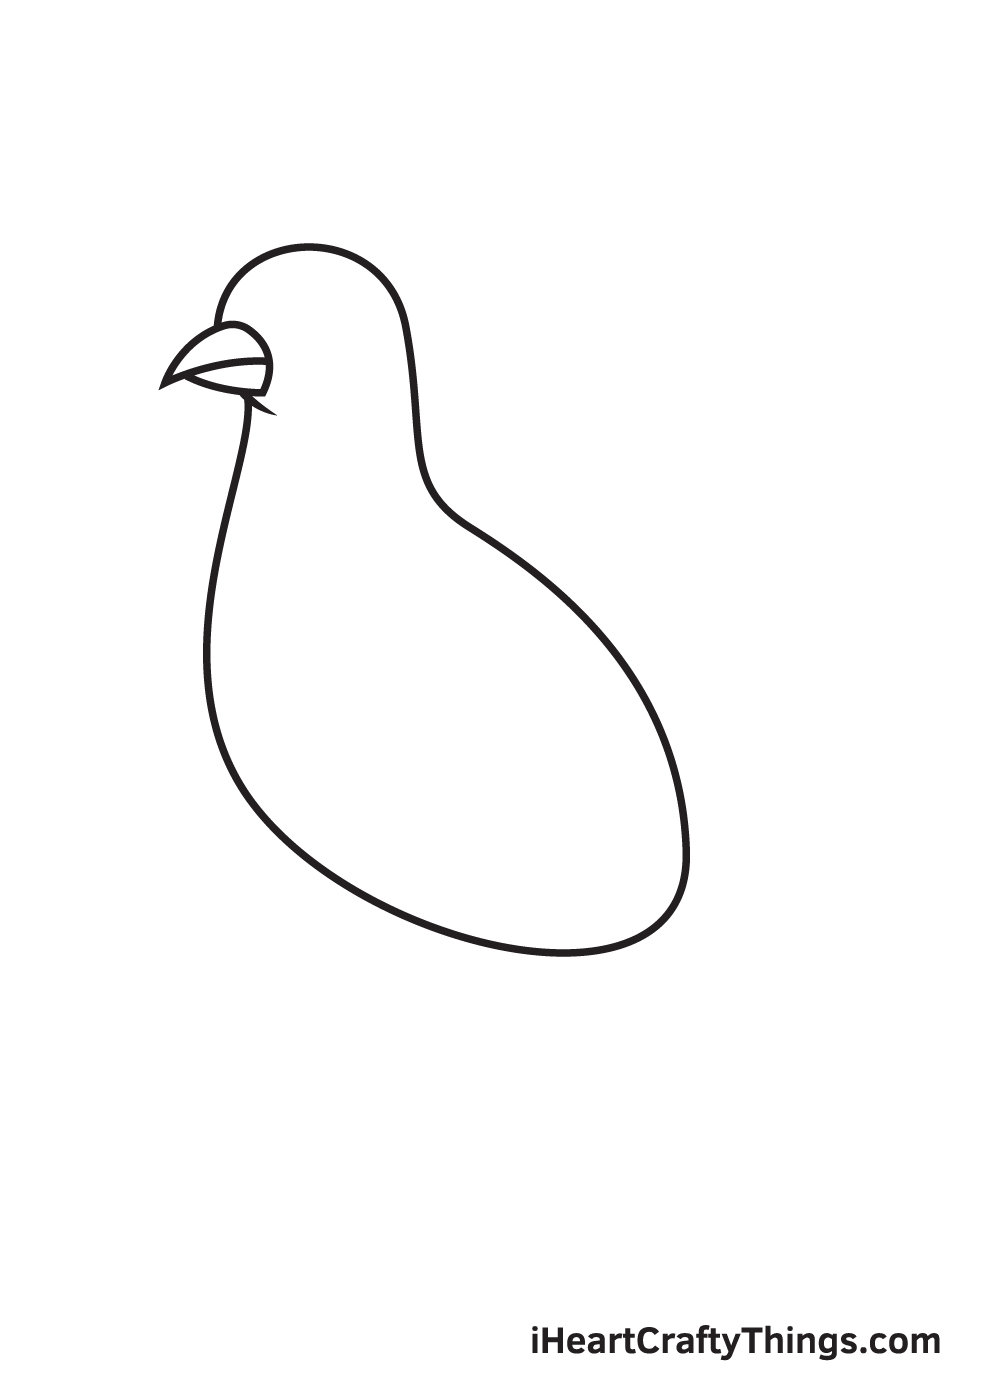 VẼ CON HEO - BƯỚC 3 - Hướng dẫn cách vẽ chim bồ câu đơn giản với 9 bước cơ bản